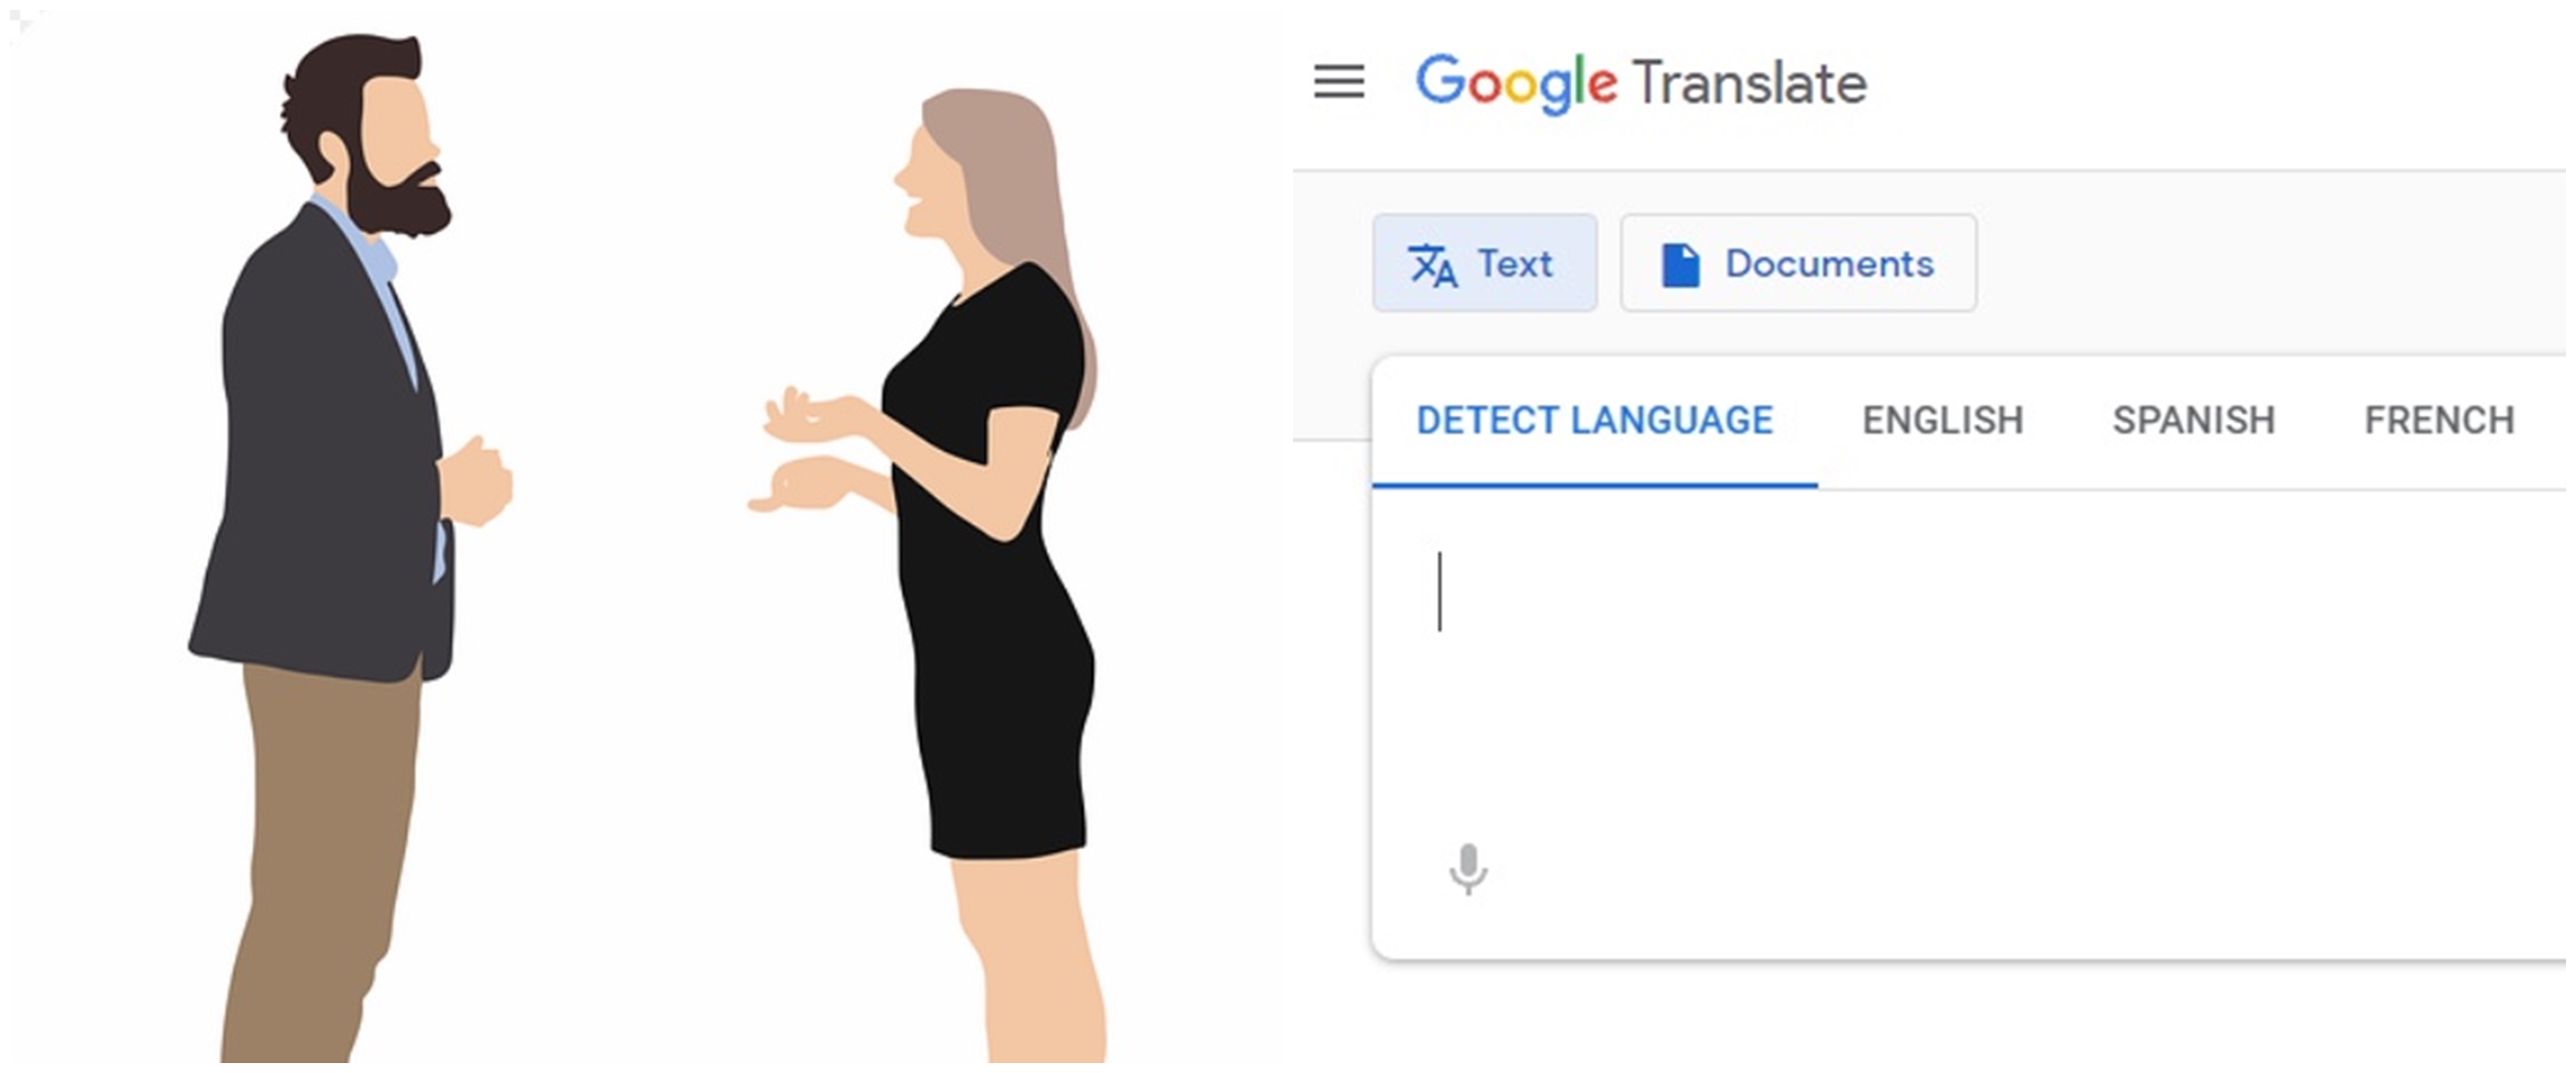 9 Langkah terjemahkan percakapan langsung Google Translate di Android